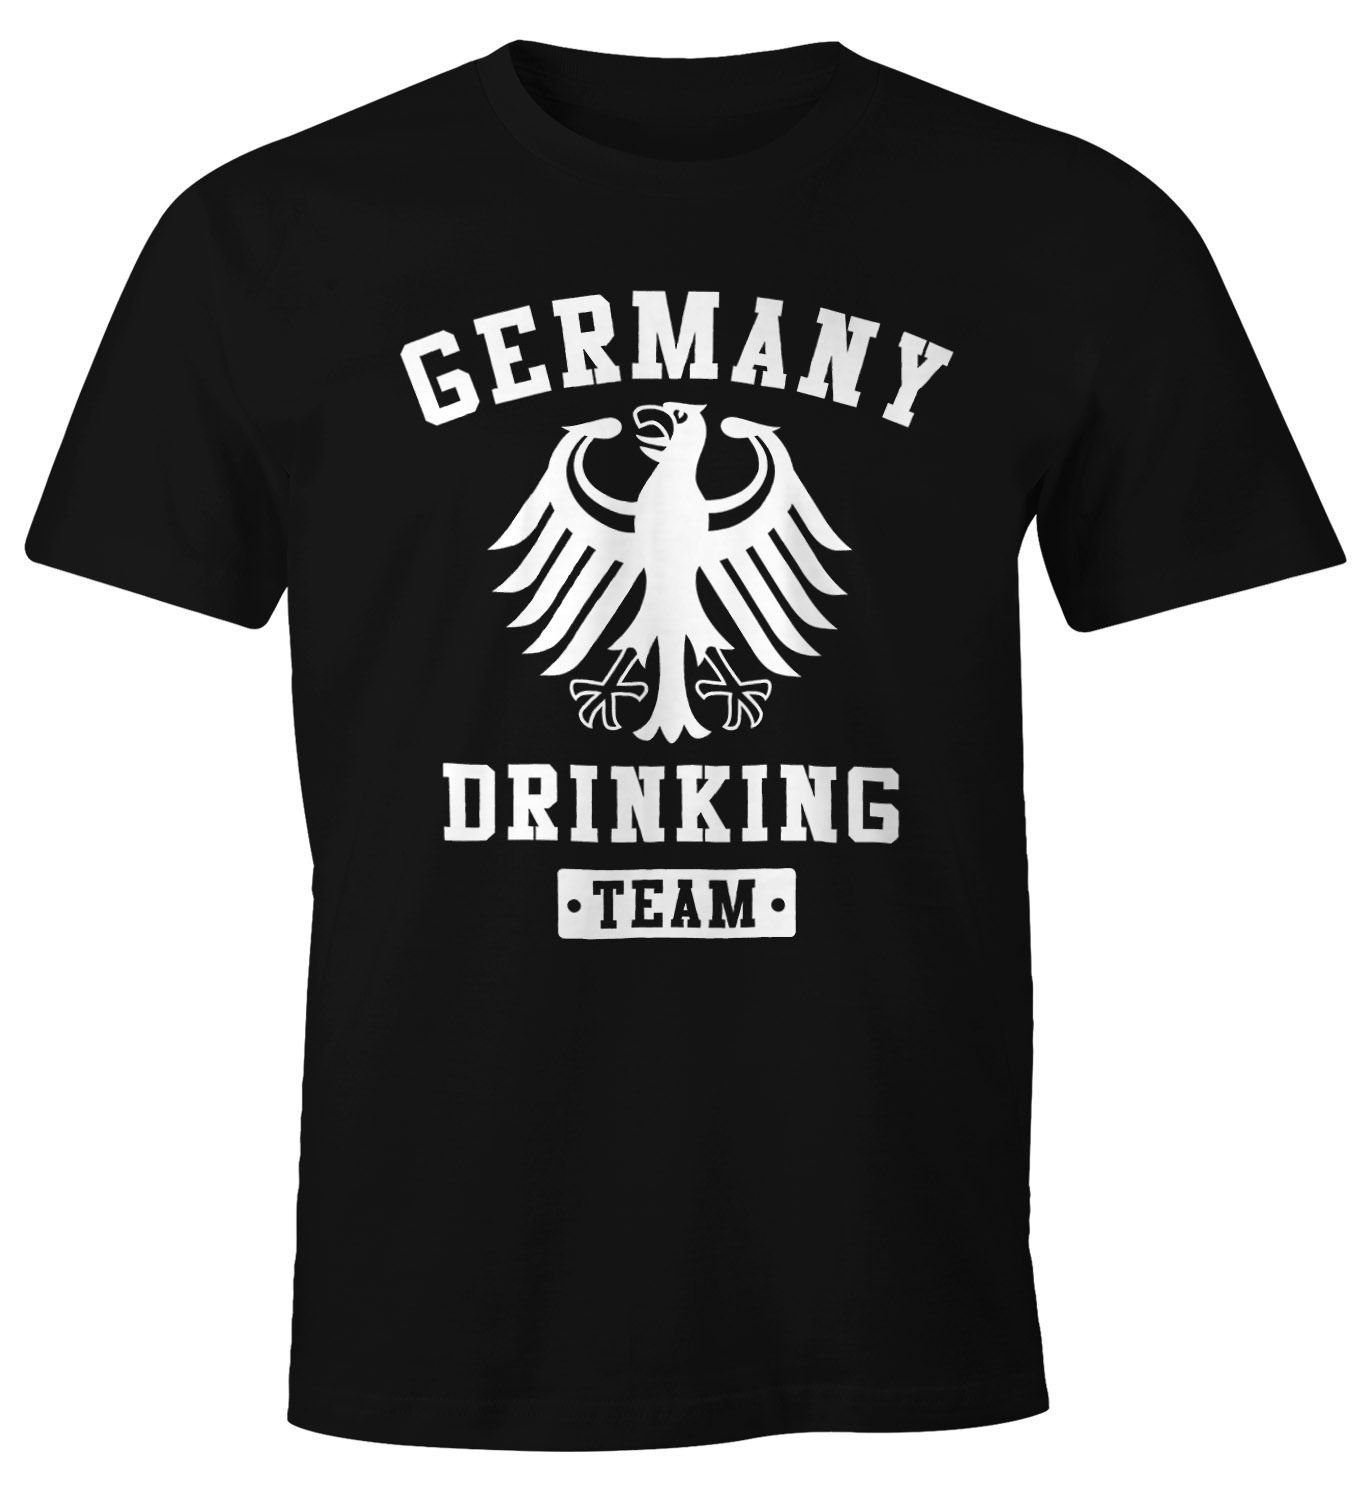 MoonWorks Print-Shirt Deutschland Herren T-Shirt Germany Drinking Team Bier Adler Fun-Shirt Moonworks® mit Print schwarz